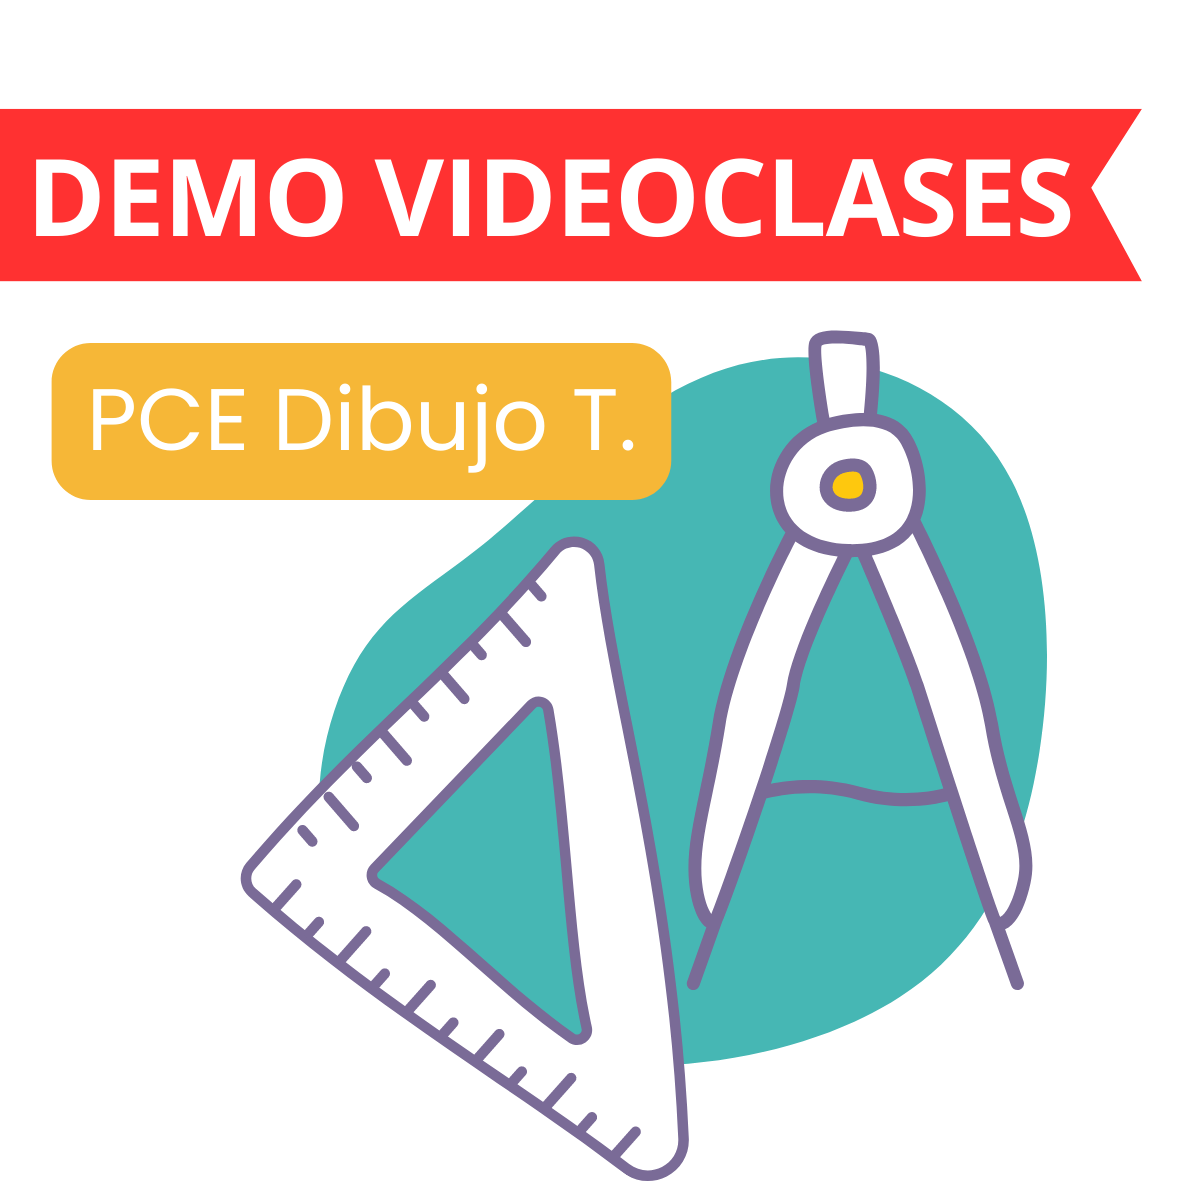 Dibujo técnico PCE DEMO videoclases curso online